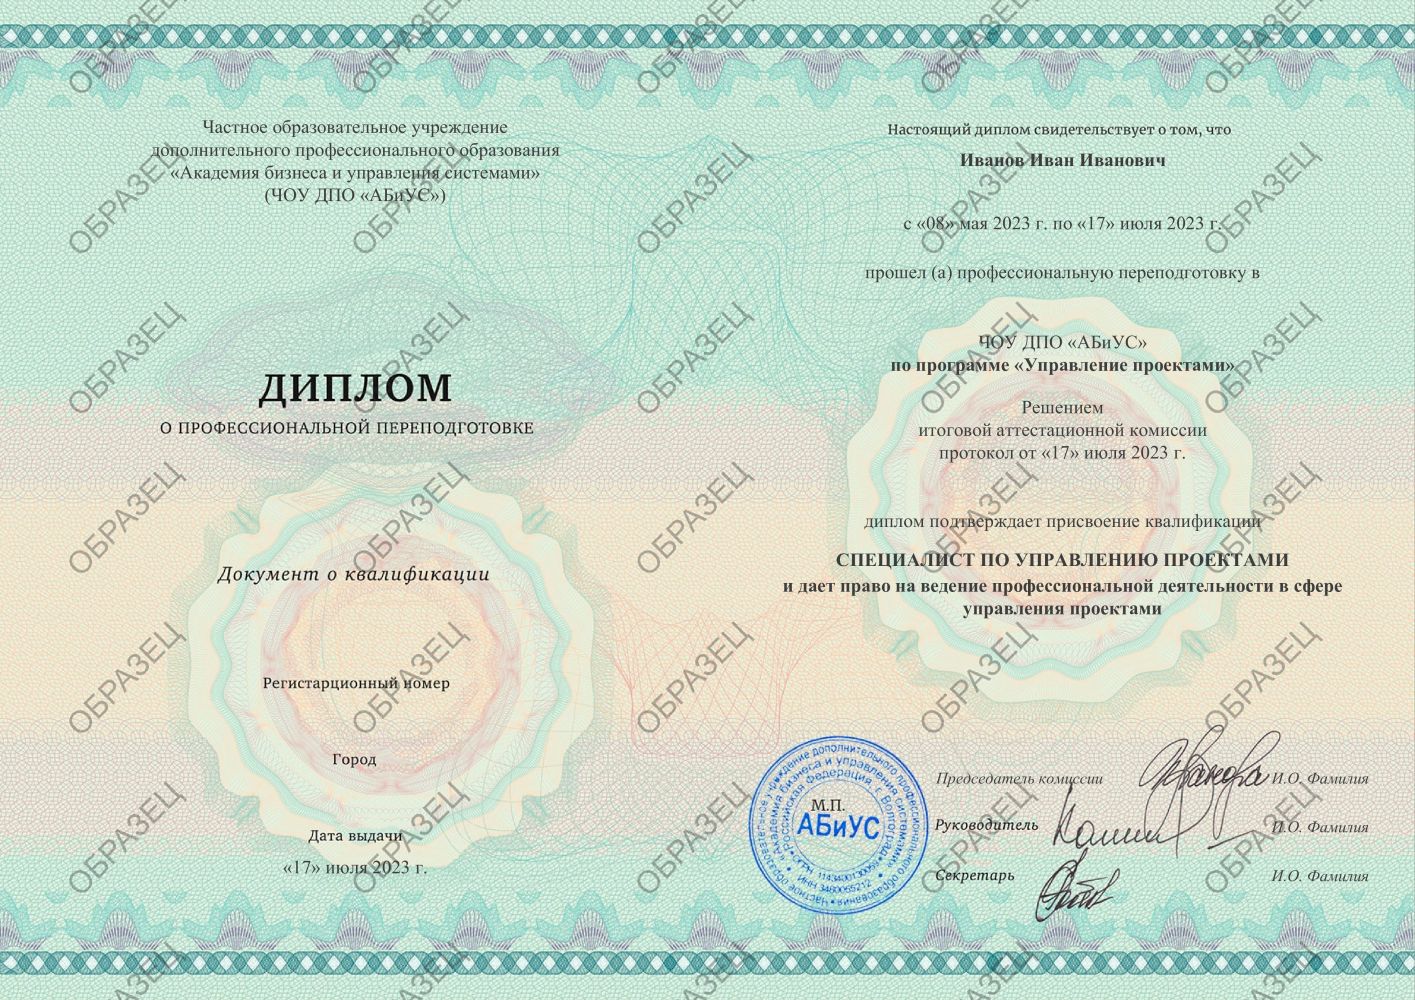 Диплом Управление проектами 260 часов 16250 руб.